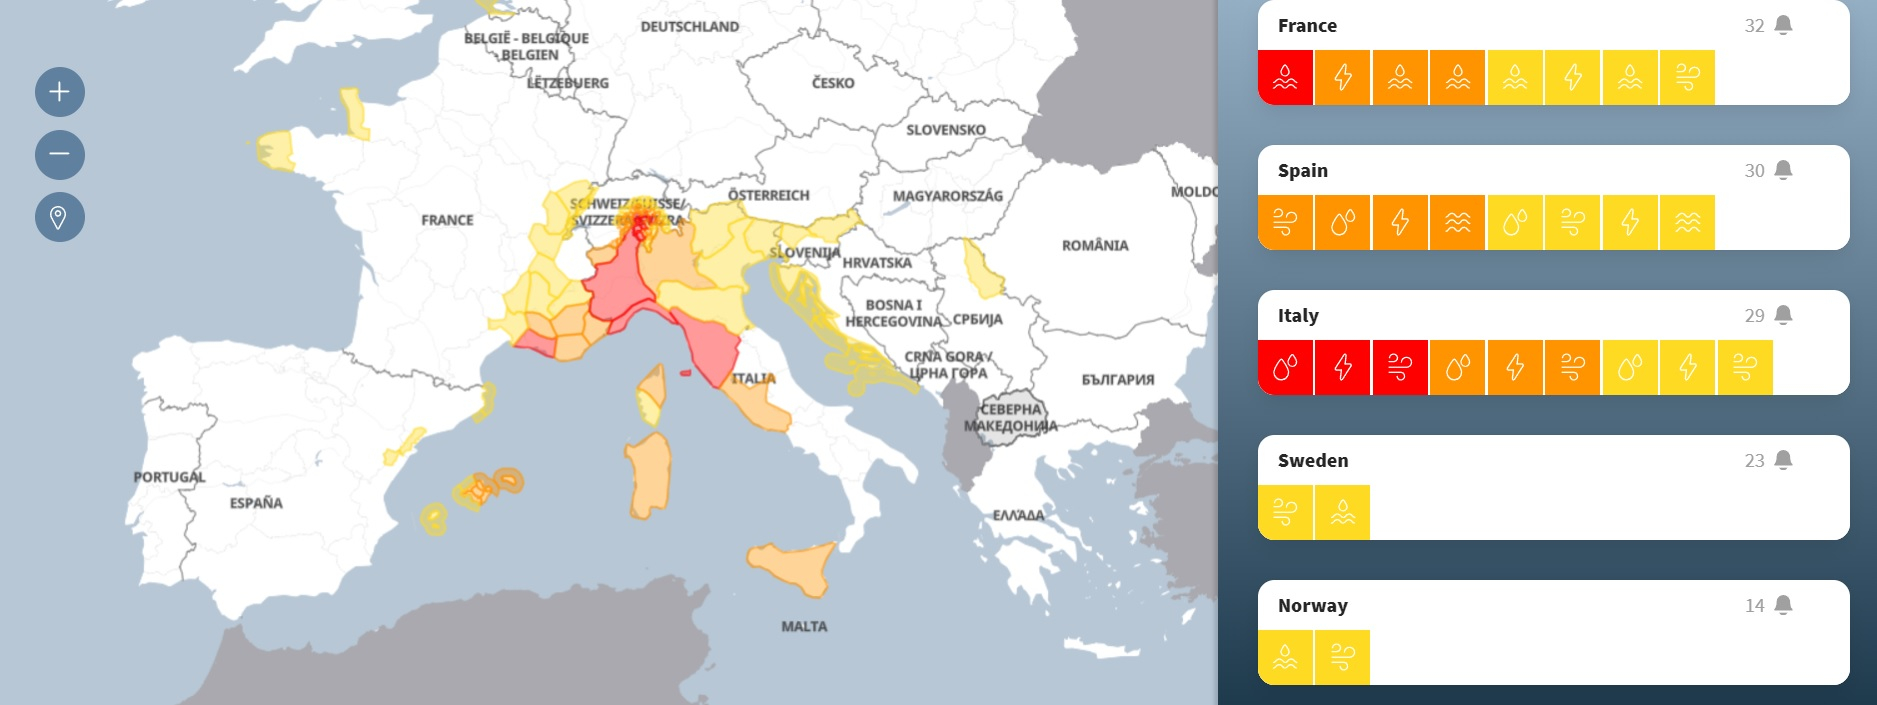 Meteo Balkans бие тревога за мощен средиземноморски циклон, идващ към Балканите